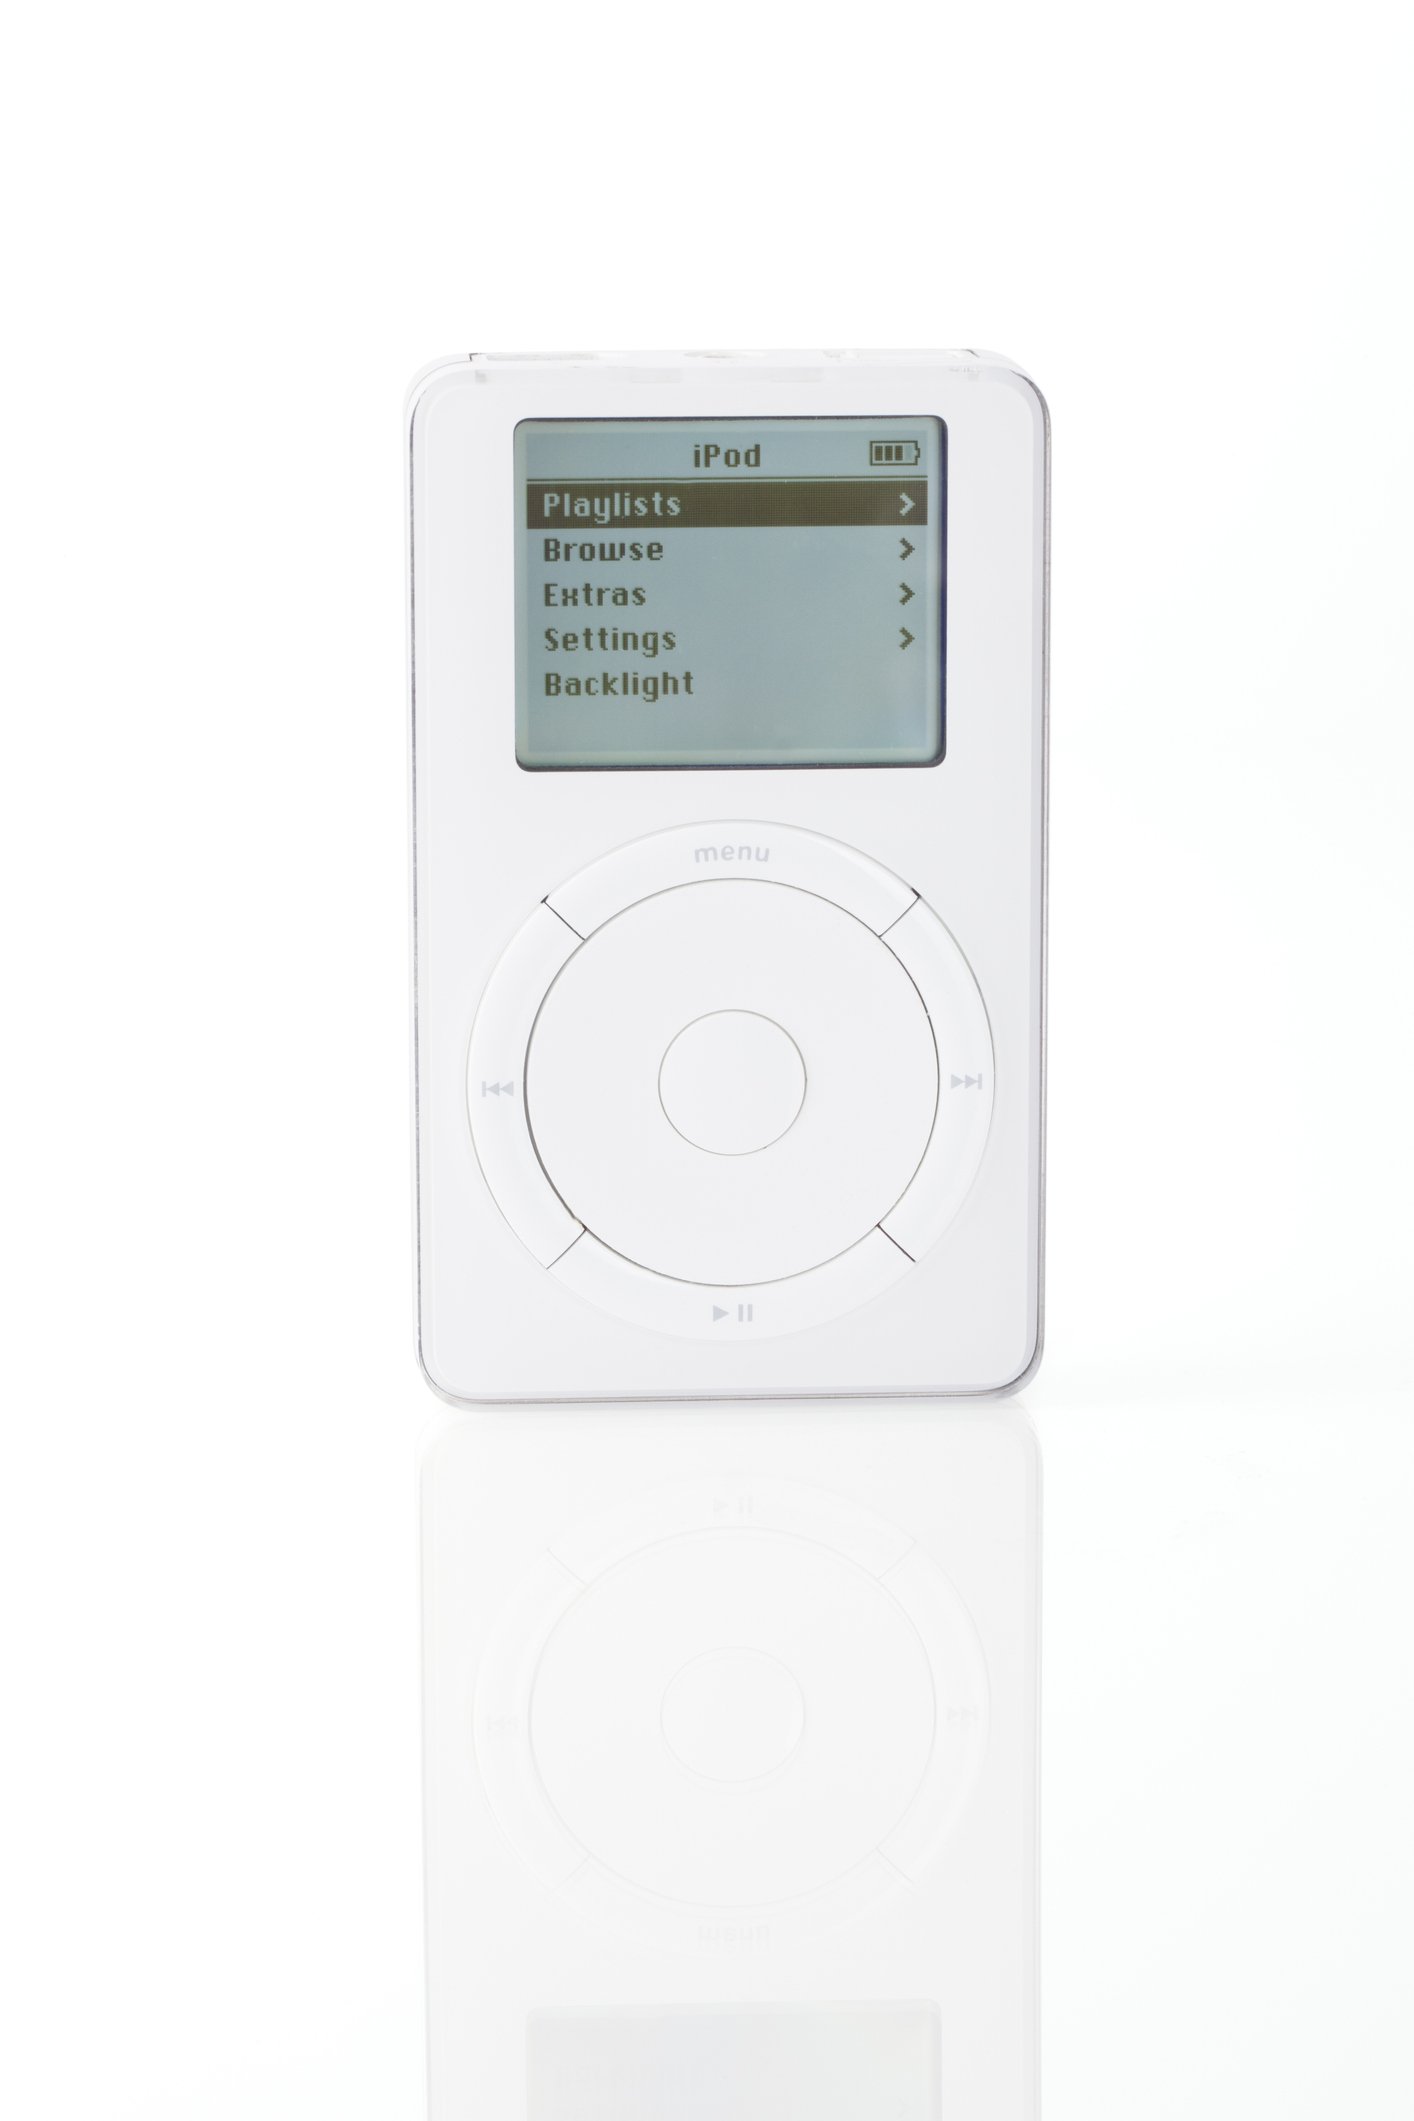 Дизайнът на първите модели iPod бързо се превръща в култов